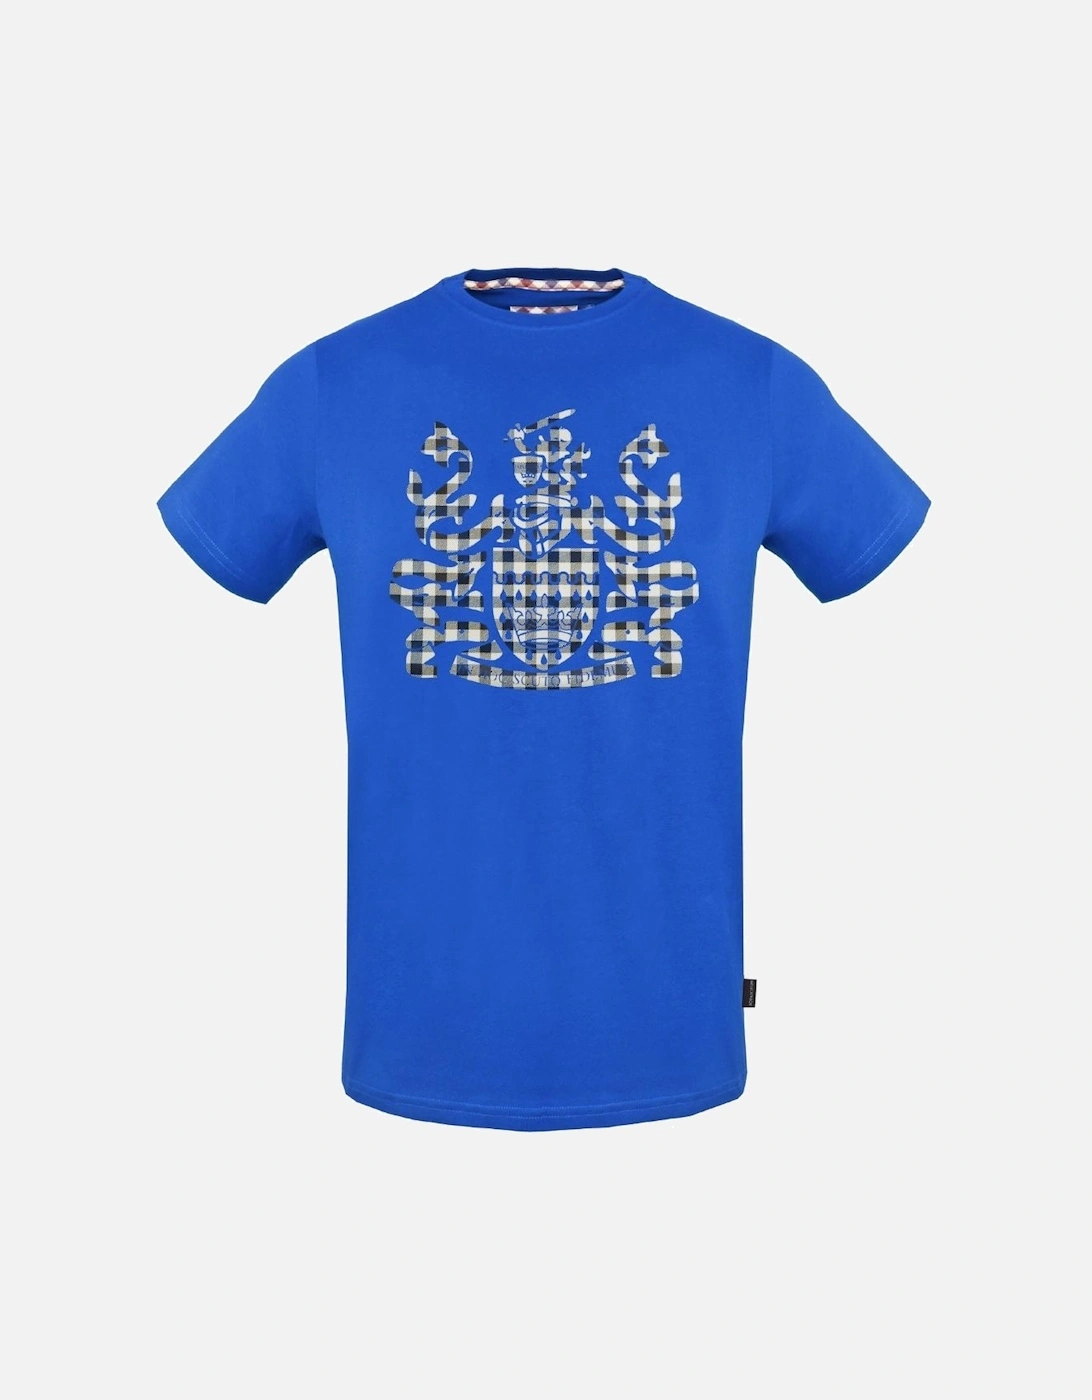 Check Aldis Crest Royal Blue T-Shirt, 3 of 2